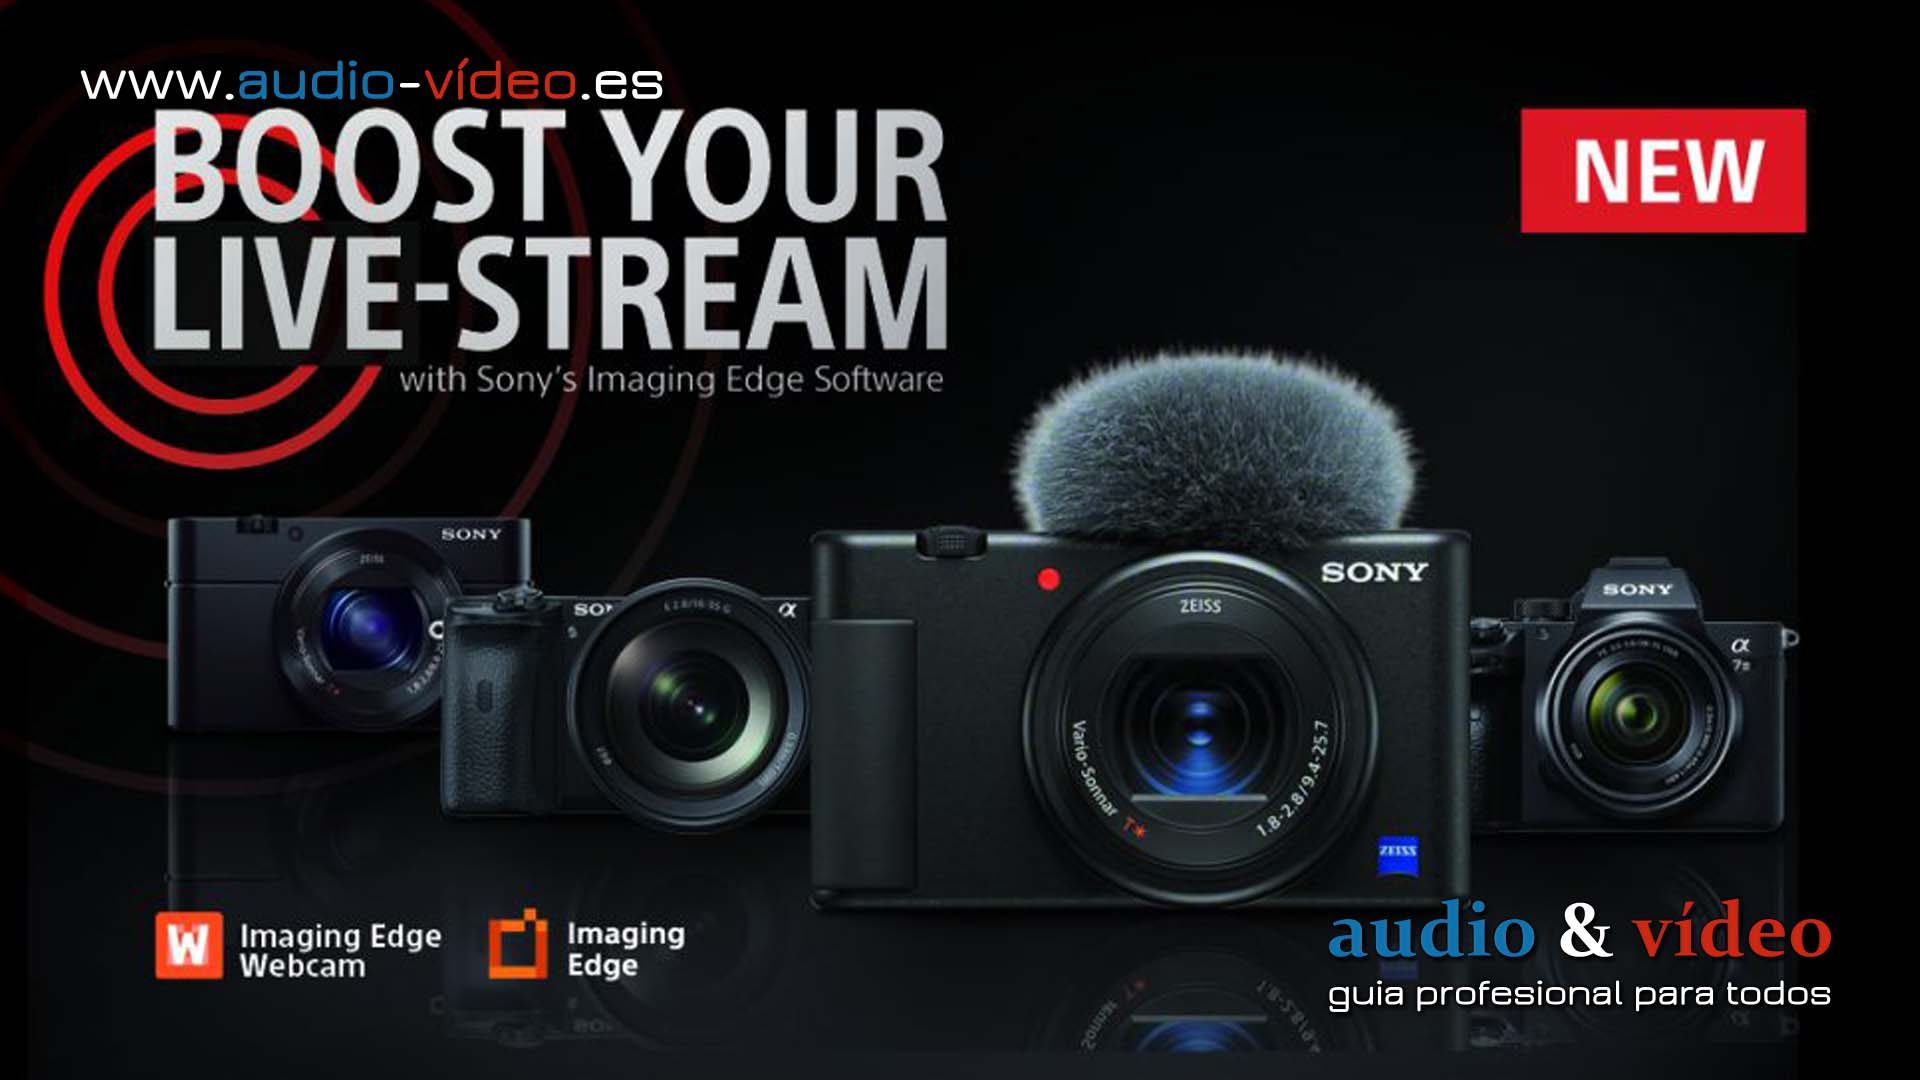 Sony Imaging Edge Webcam un software para realizar videollamadas y streaming en vivo de alta calidad.